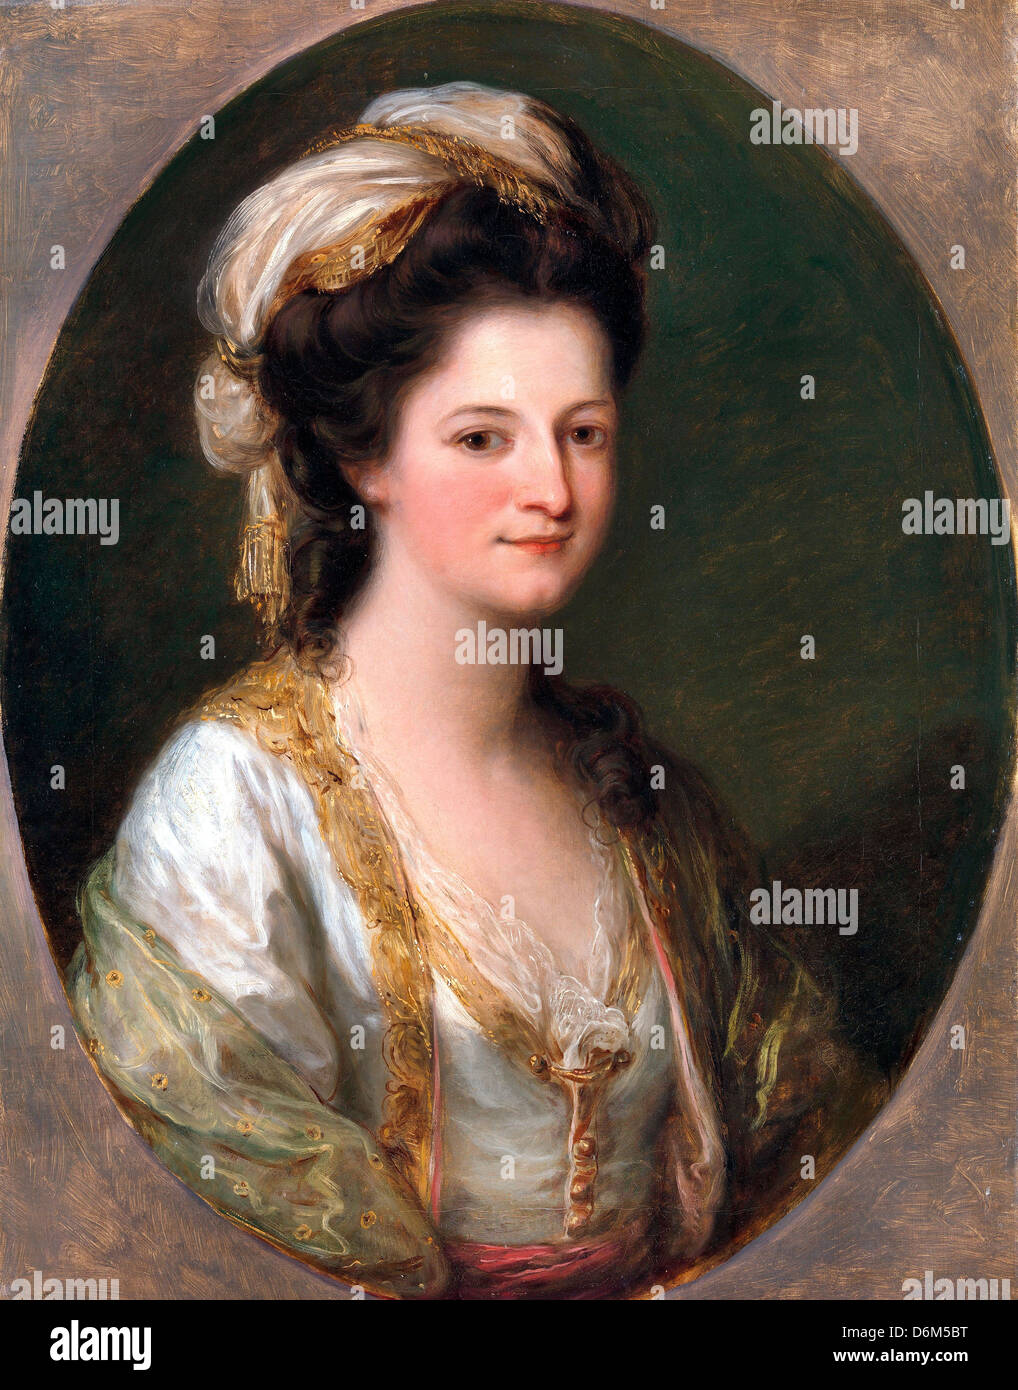 Angelika Kauffmann, Porträt einer Frau, traditionsgemäß gekennzeichnet als Lady Hervey. Ca. 1770. Öl auf Leinwand. Stockfoto